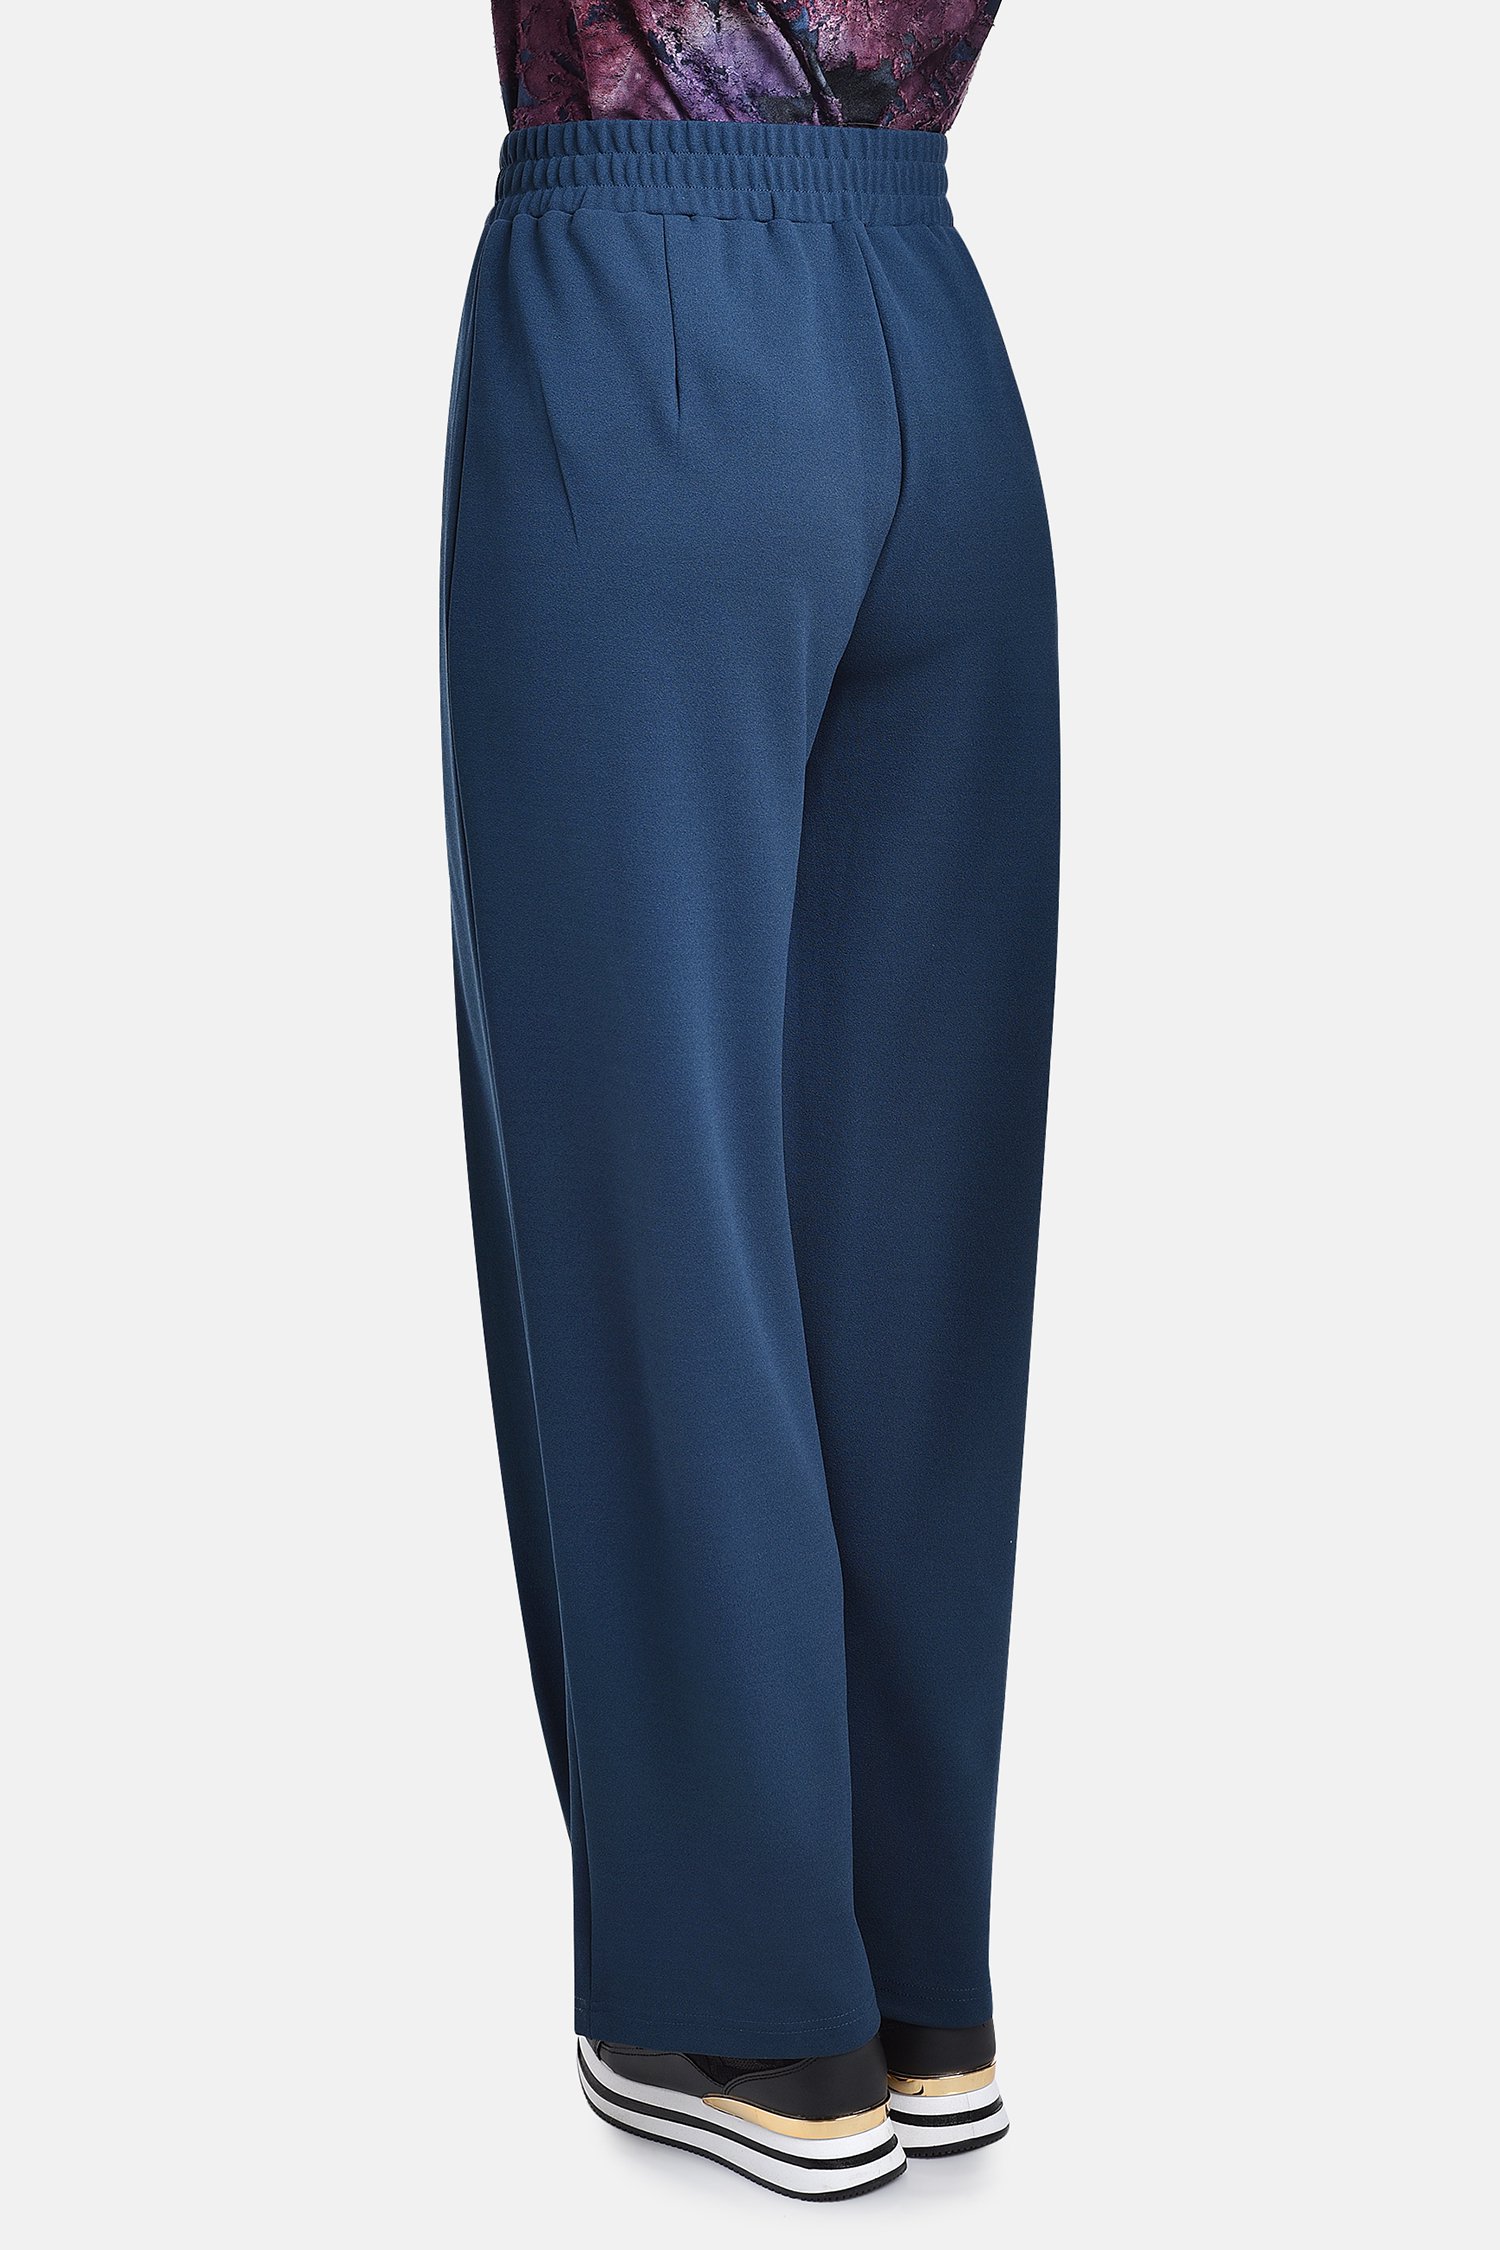 Navy wijde broek met elastische taille van Bicalla voor Dames